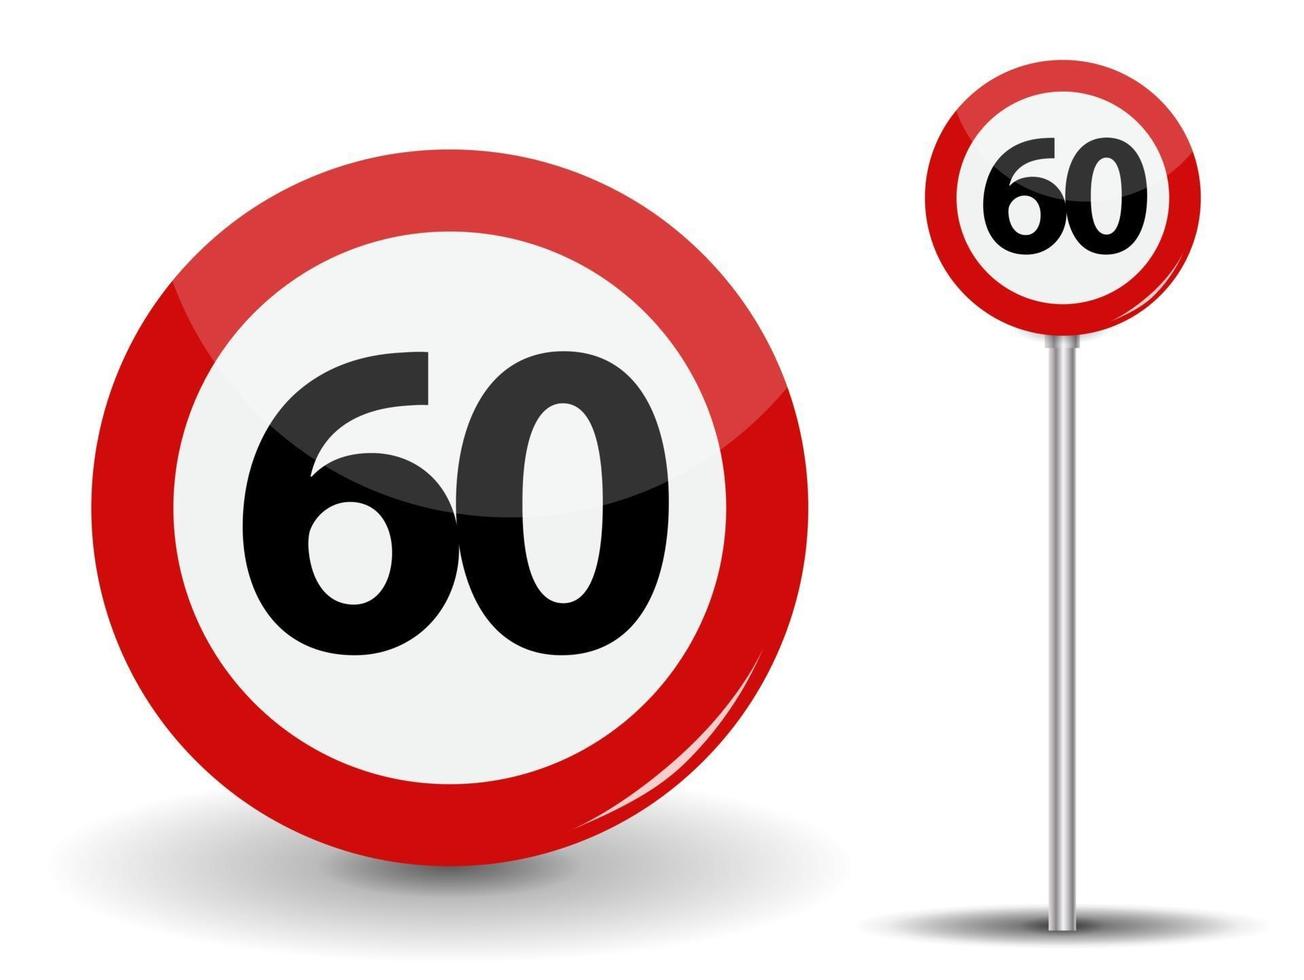 Señal de carretera roja redonda límite de velocidad de 60 kilómetros por hora vector